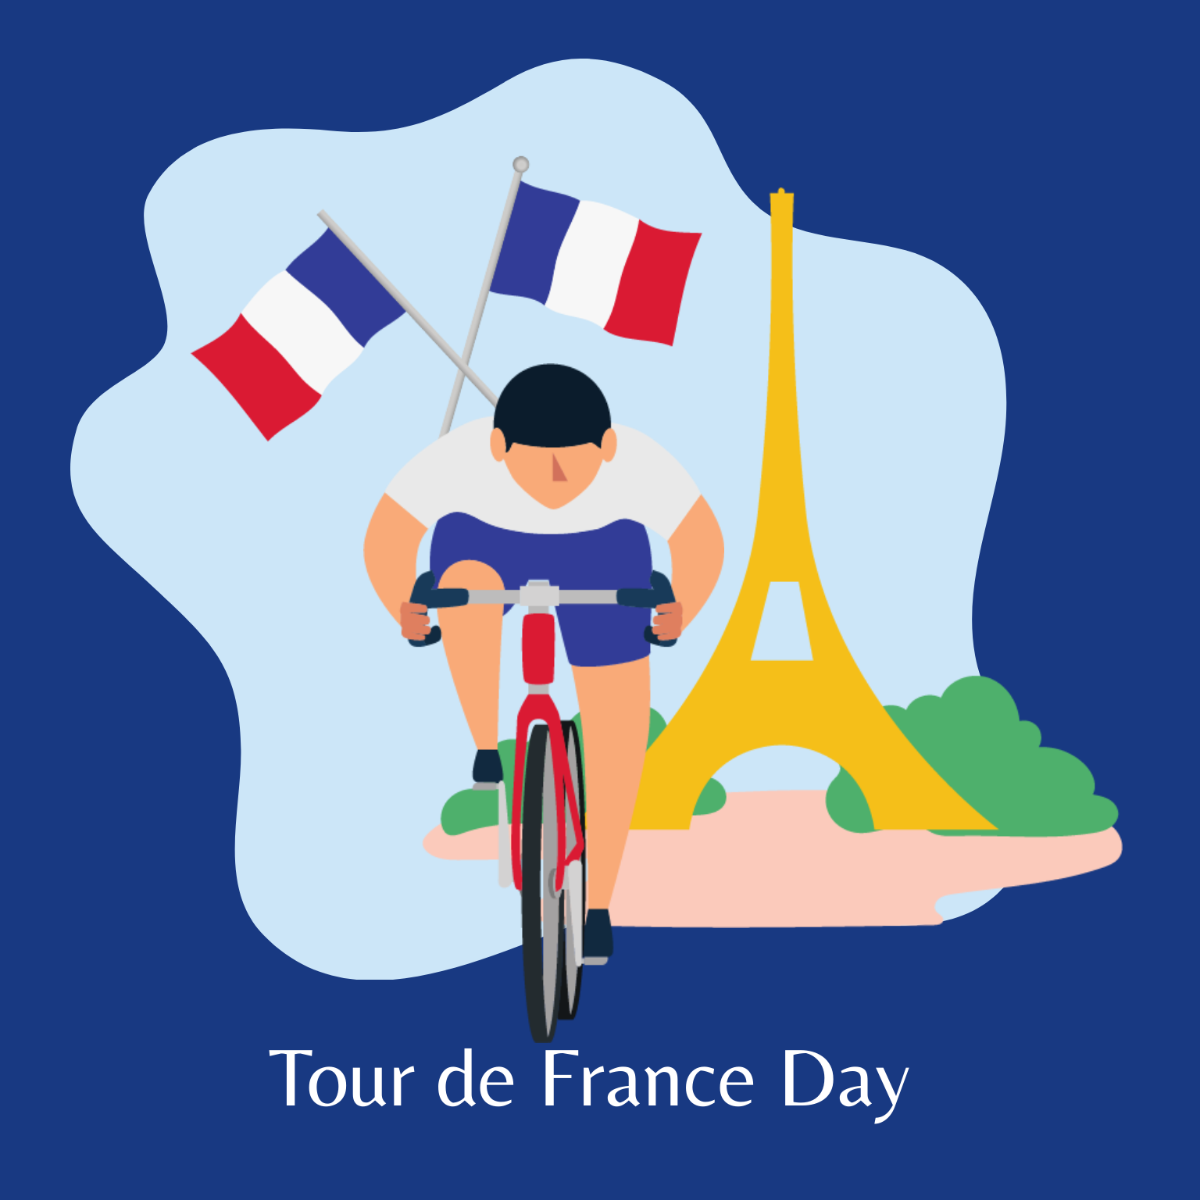 Free Tour de France Celebration Vector Template